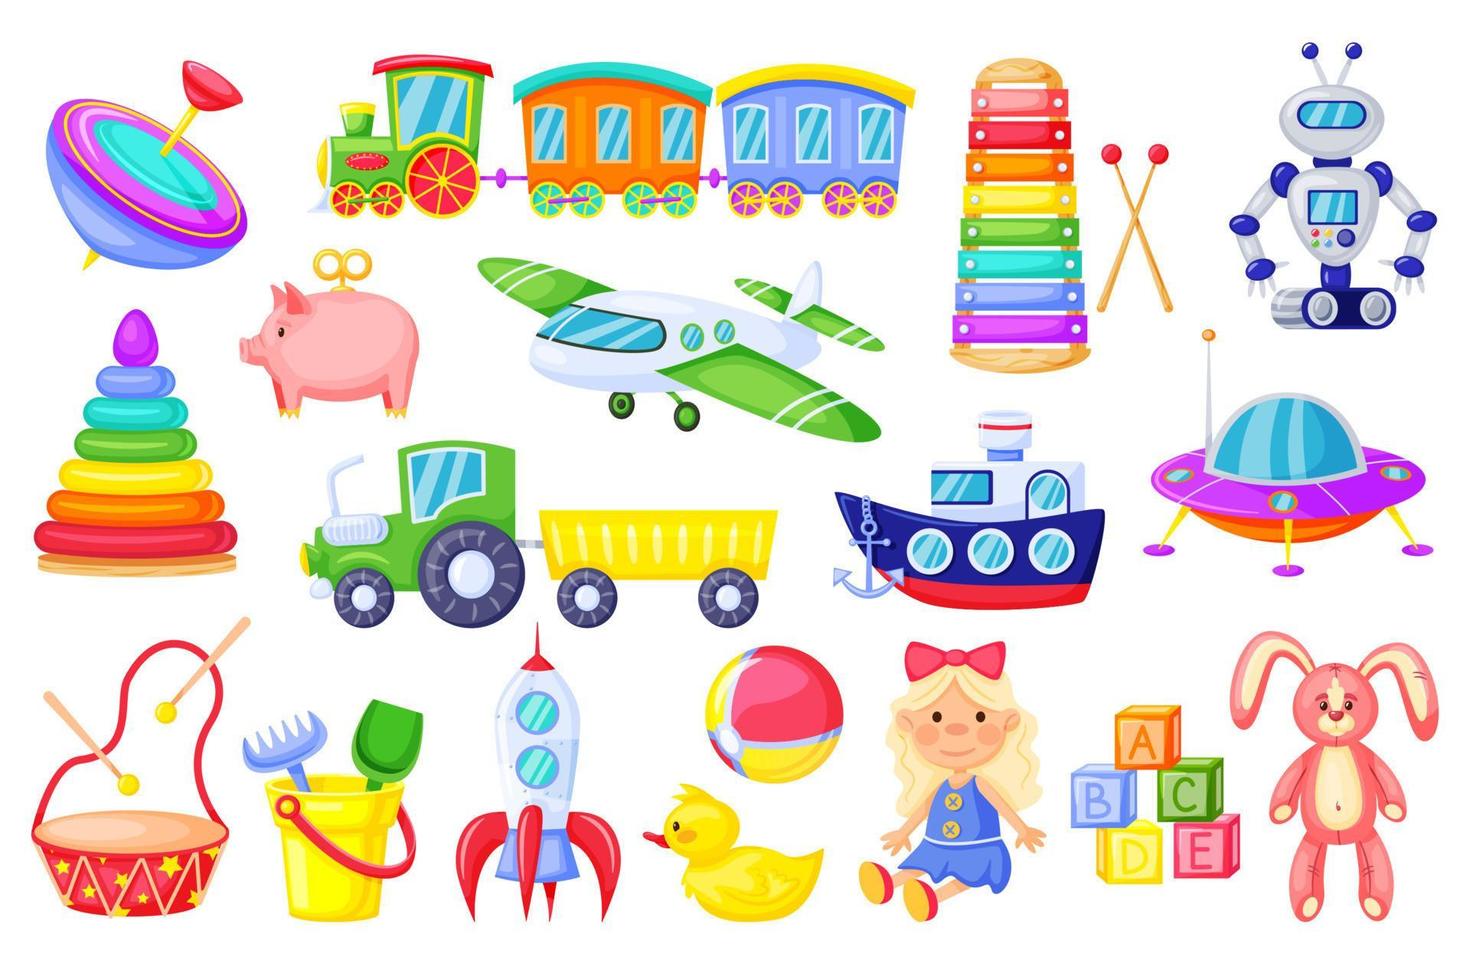 niños juguetes dibujos animados cohete, barco, tren, linda niña muñeca, pato, felpa conejito, alfabeto cubitos. vistoso el plastico juguete para niños pequeños vector conjunto